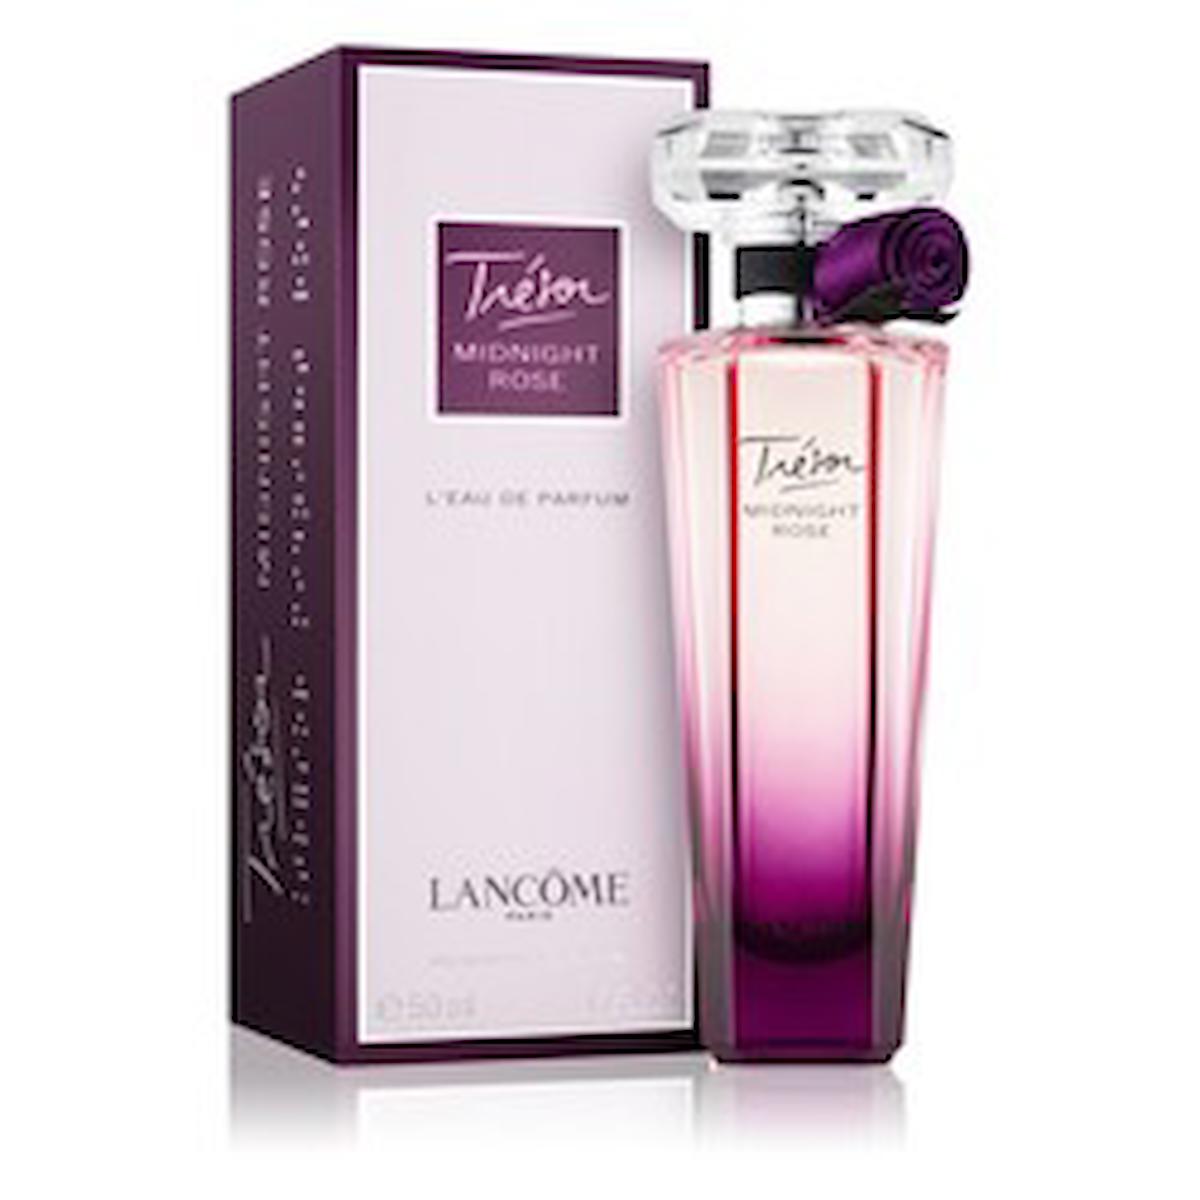 Lancome Tresor Midnight Rose EDP Gül-Şeftali Kadın Parfüm 50 ml